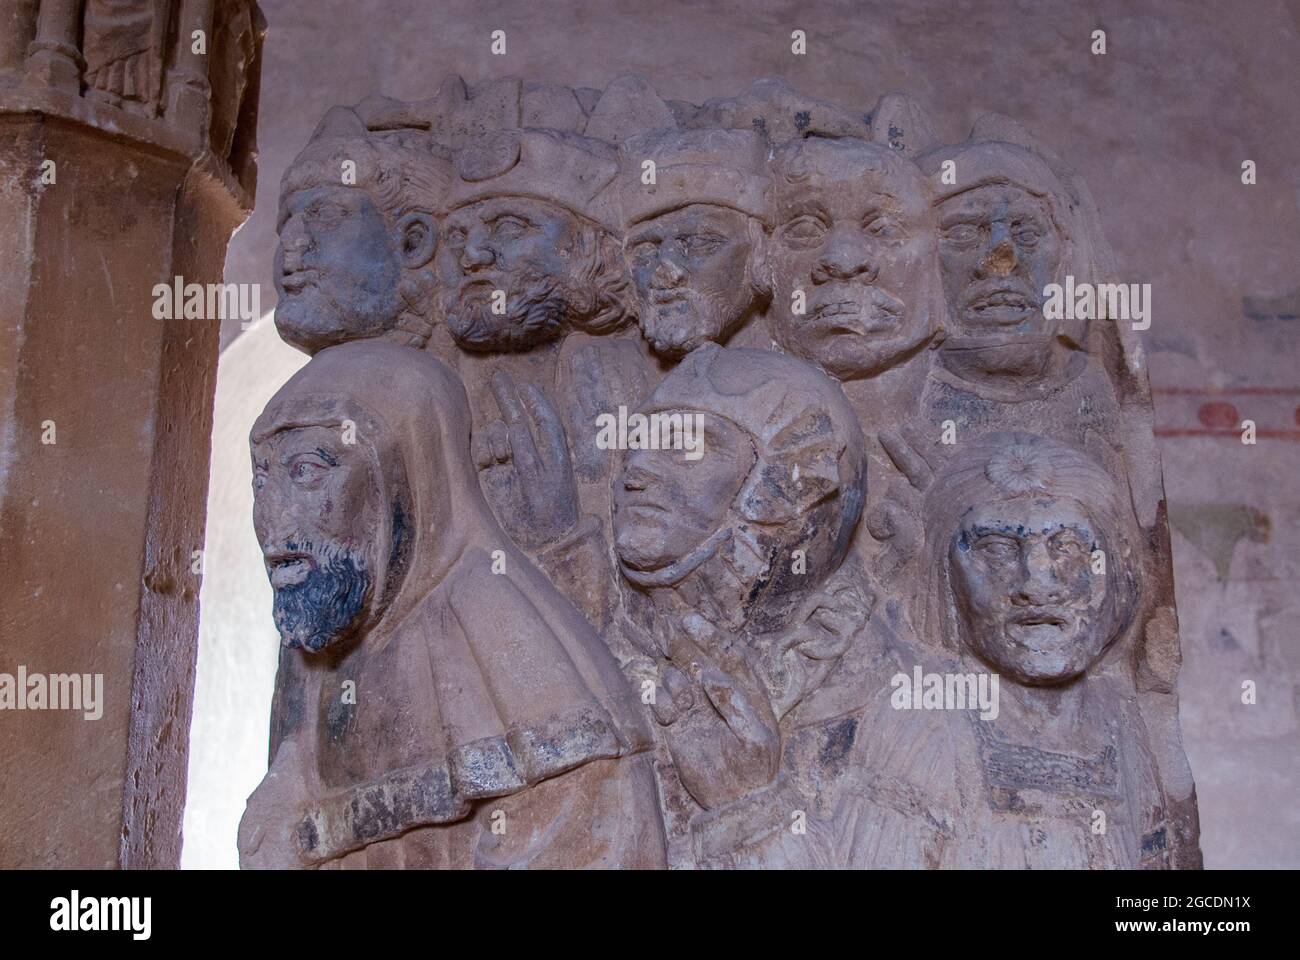 Au musée de Carcassonne : autel médiéval avec un relief représentant des témoins de la crucifixion du christ Banque D'Images